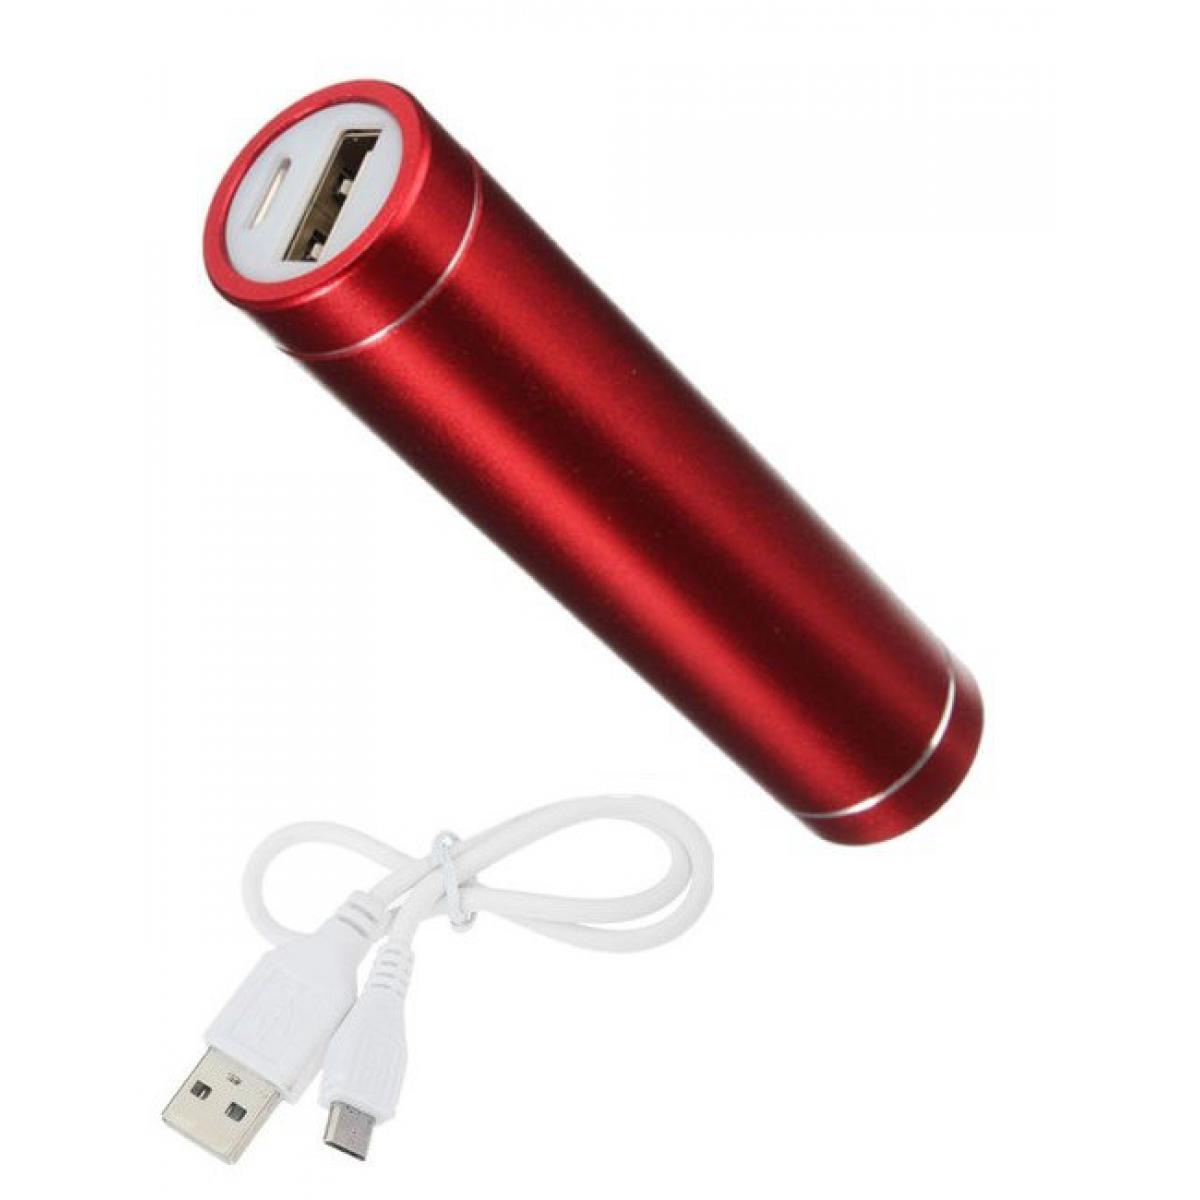 Shot - Batterie Chargeur Externe pour SAMSUNG Galaxy Z Flip Power Bank 2600mAh avec Cable USB/Mirco USB Secours Telephone (ROUGE) - Chargeur secteur téléphone